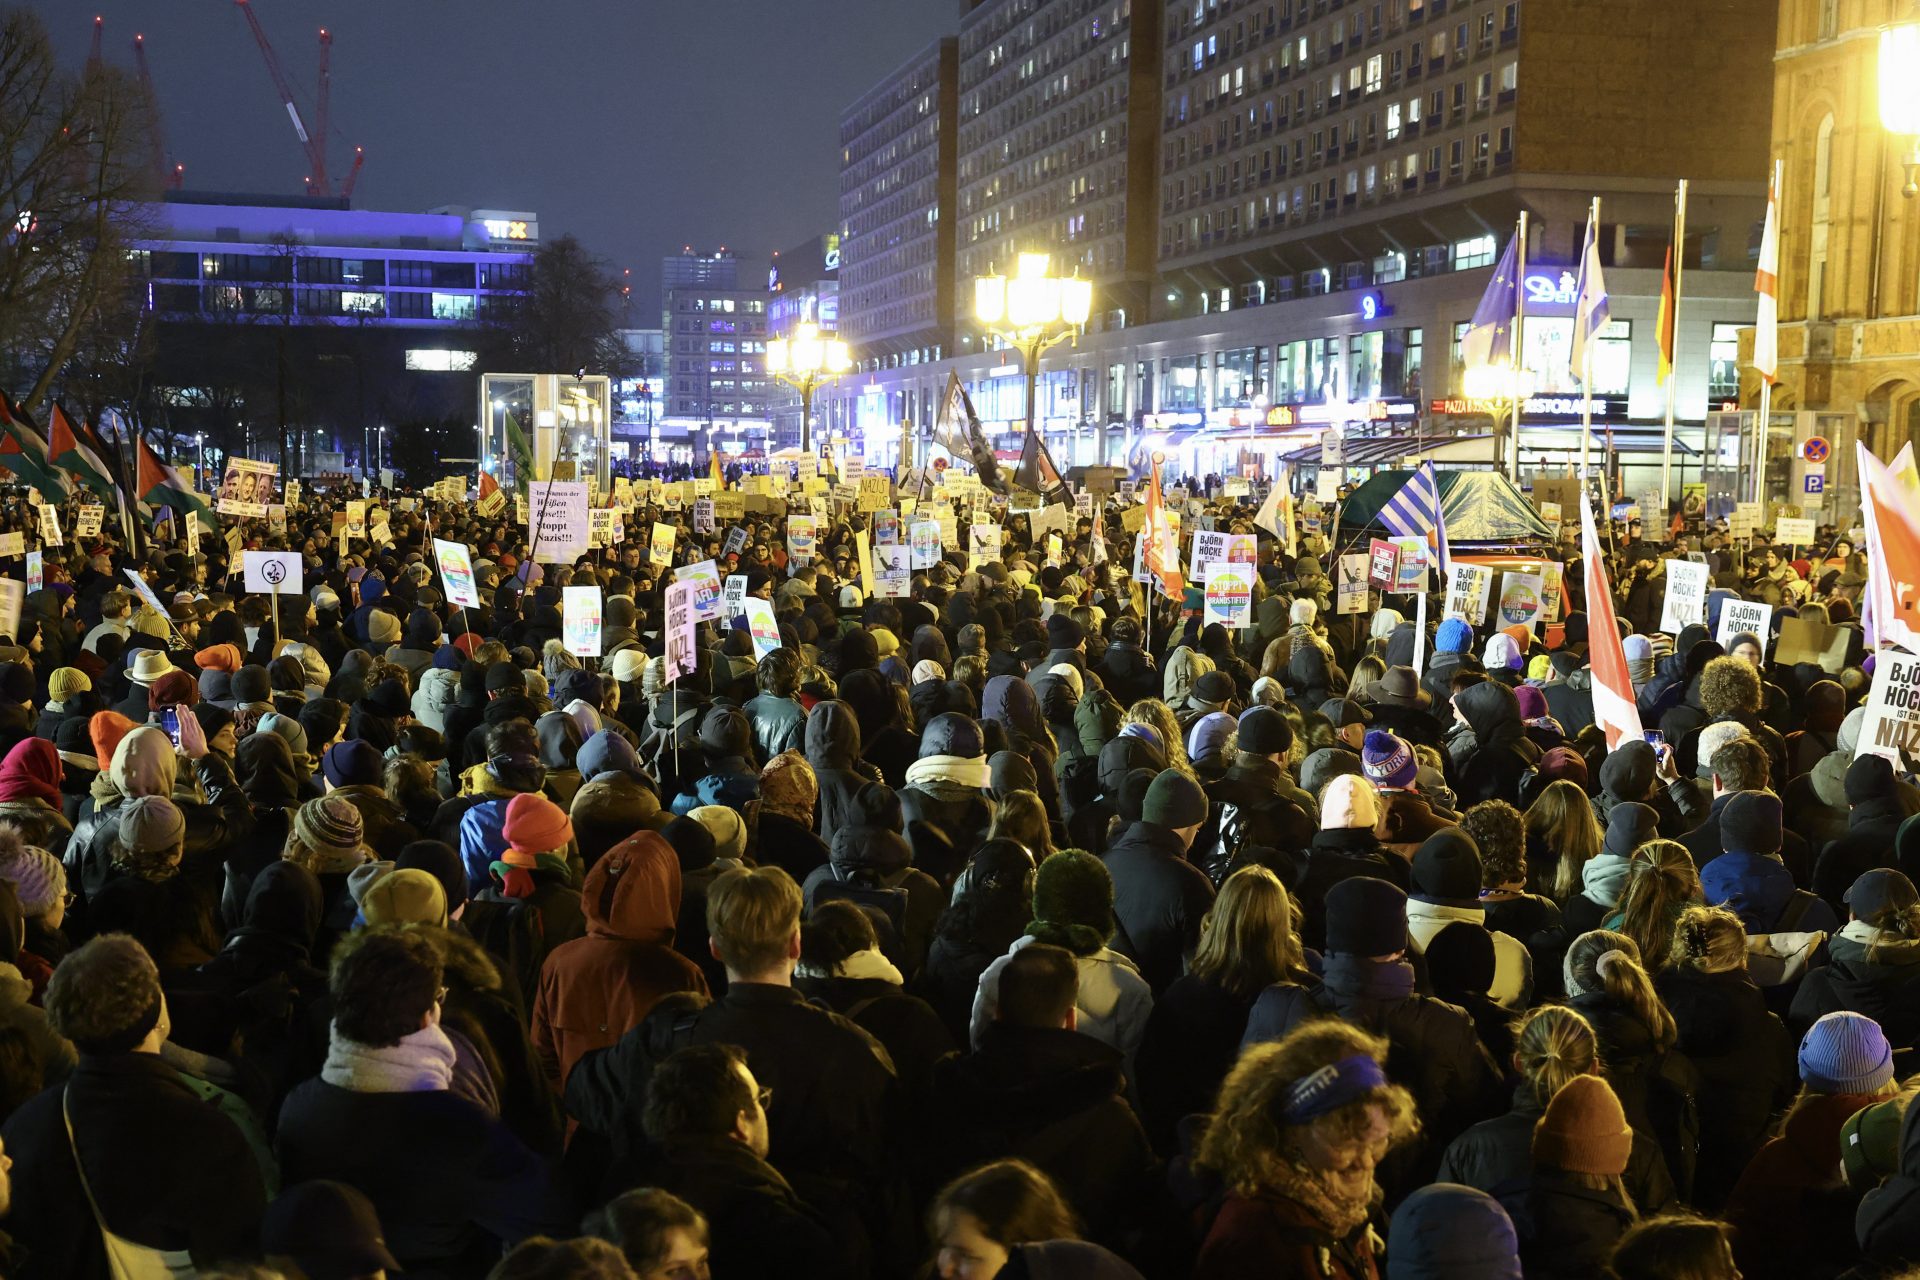 De Duitse regering steunt de demonstraties